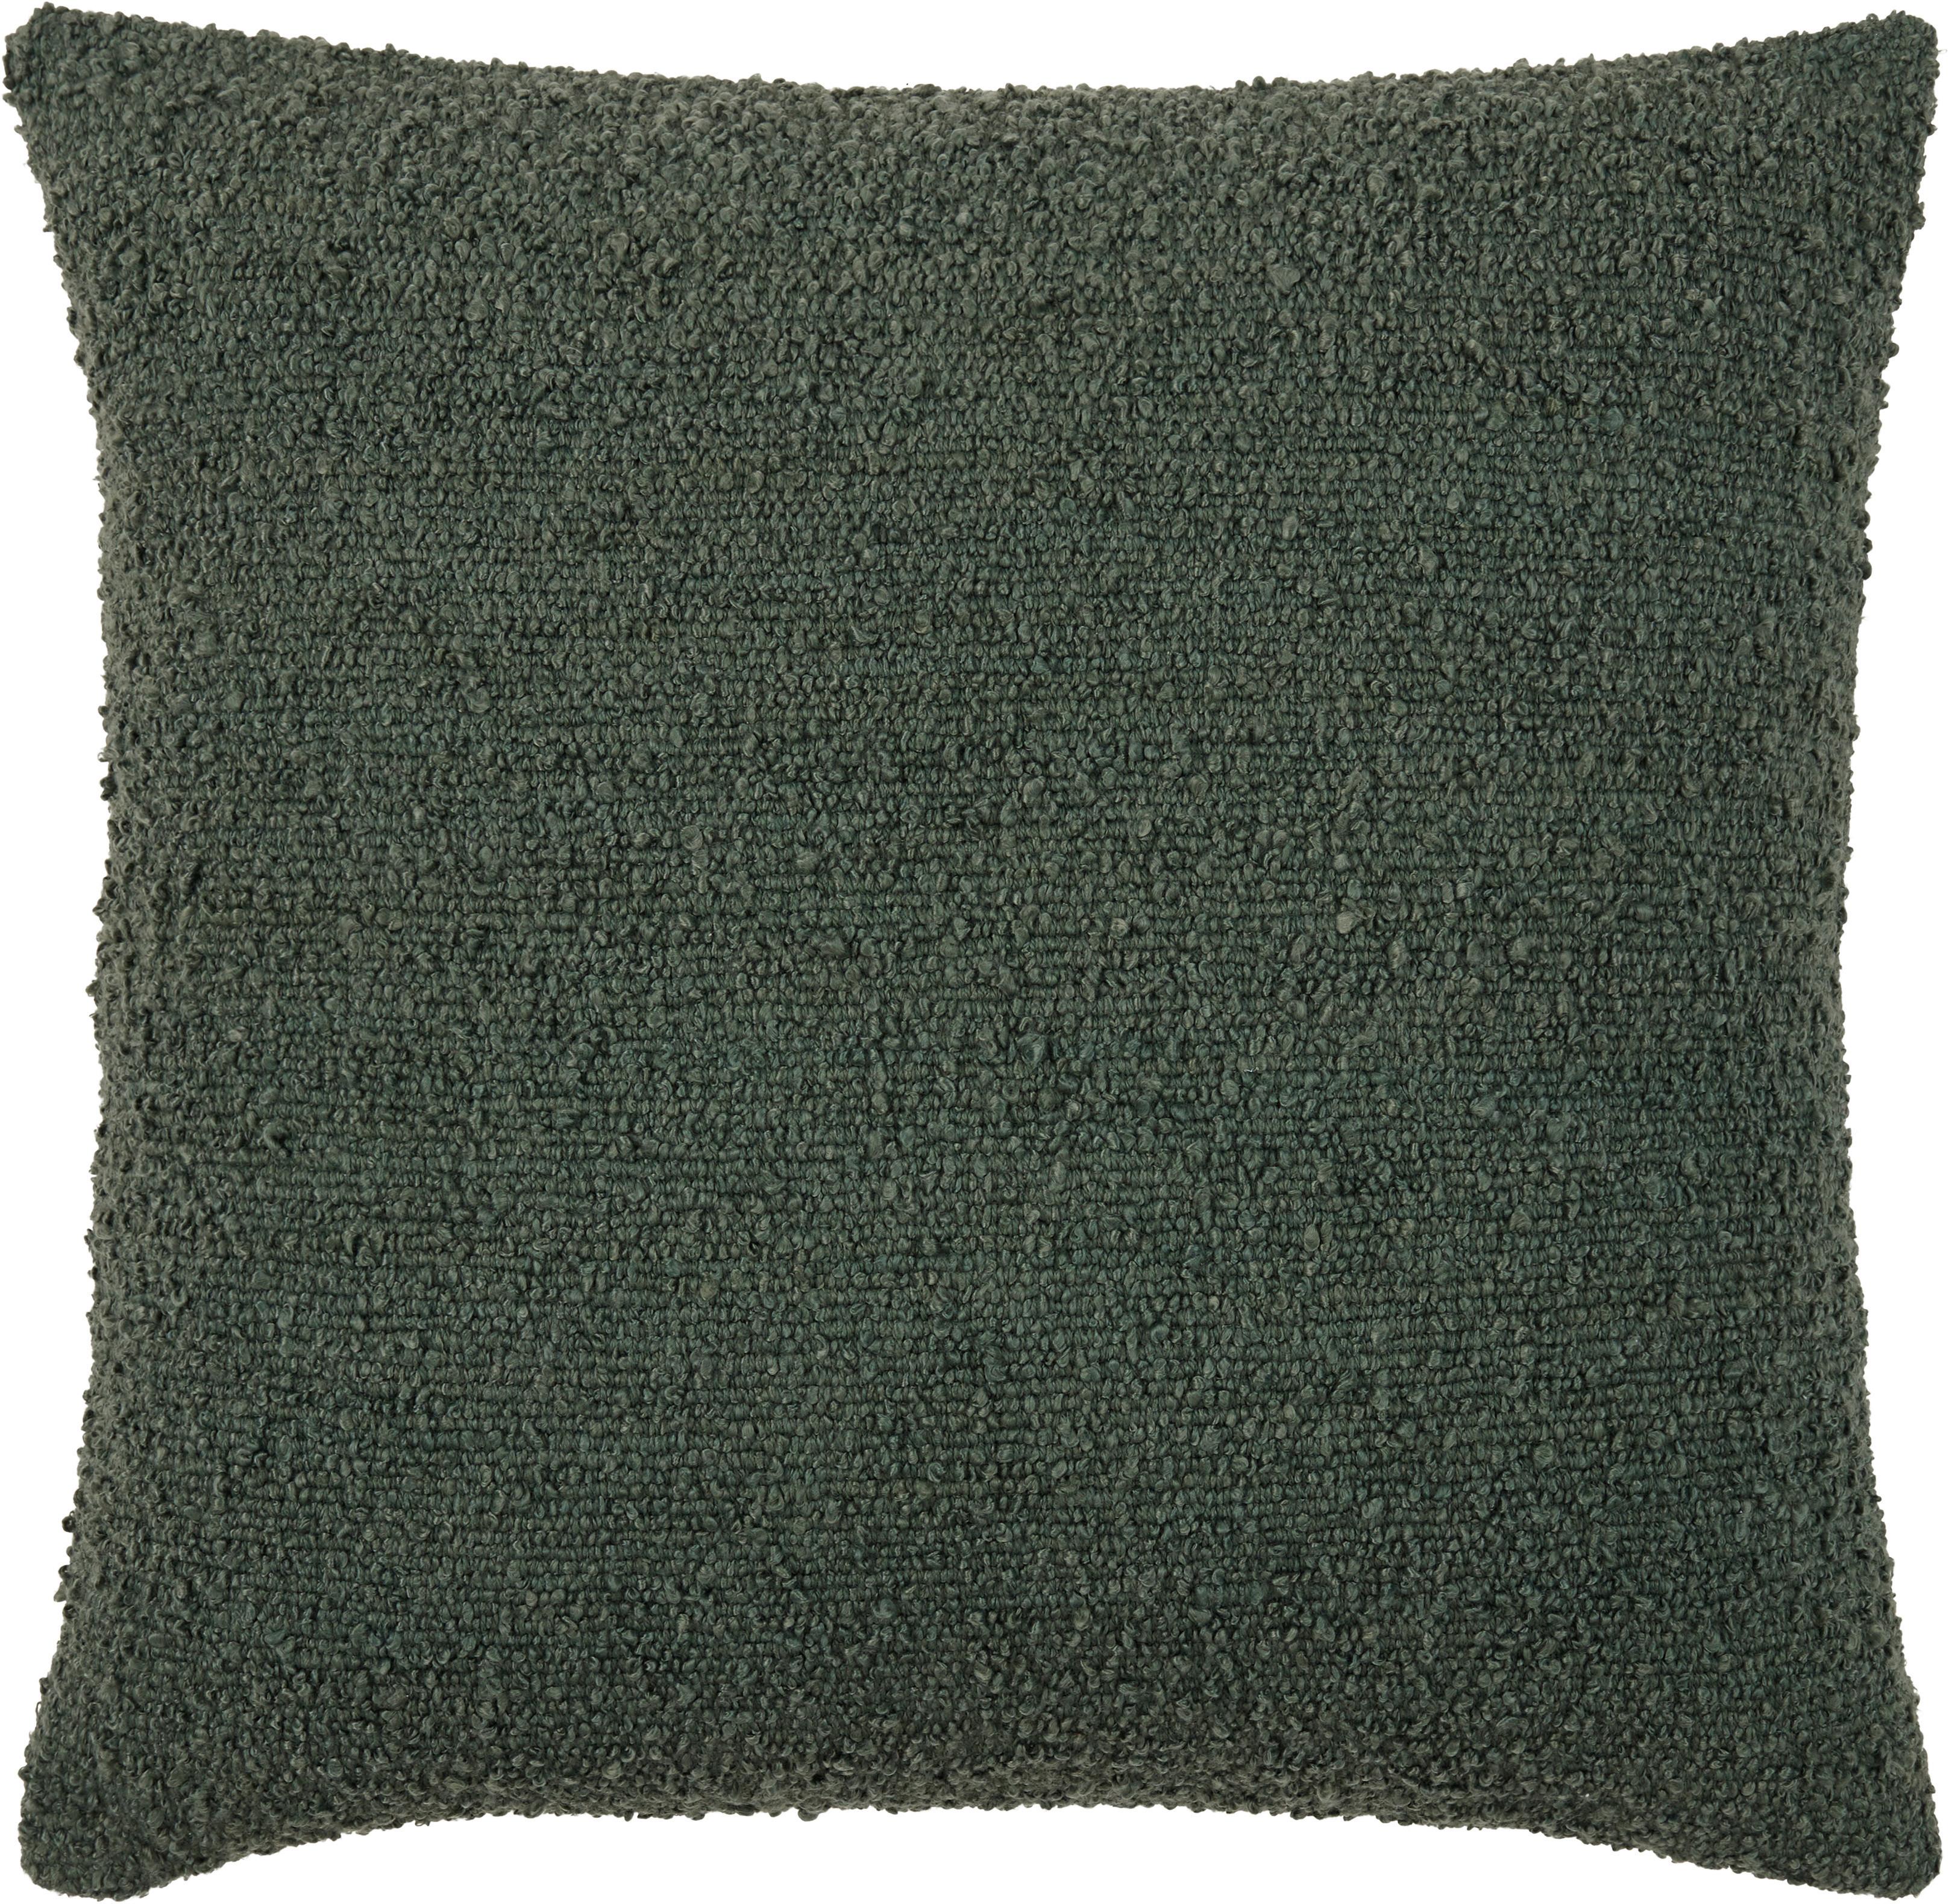 Dekorační Polštář Boucle, 45/45cm - tmavě zelená, Konvenční, textil (45/45cm) - Modern Living